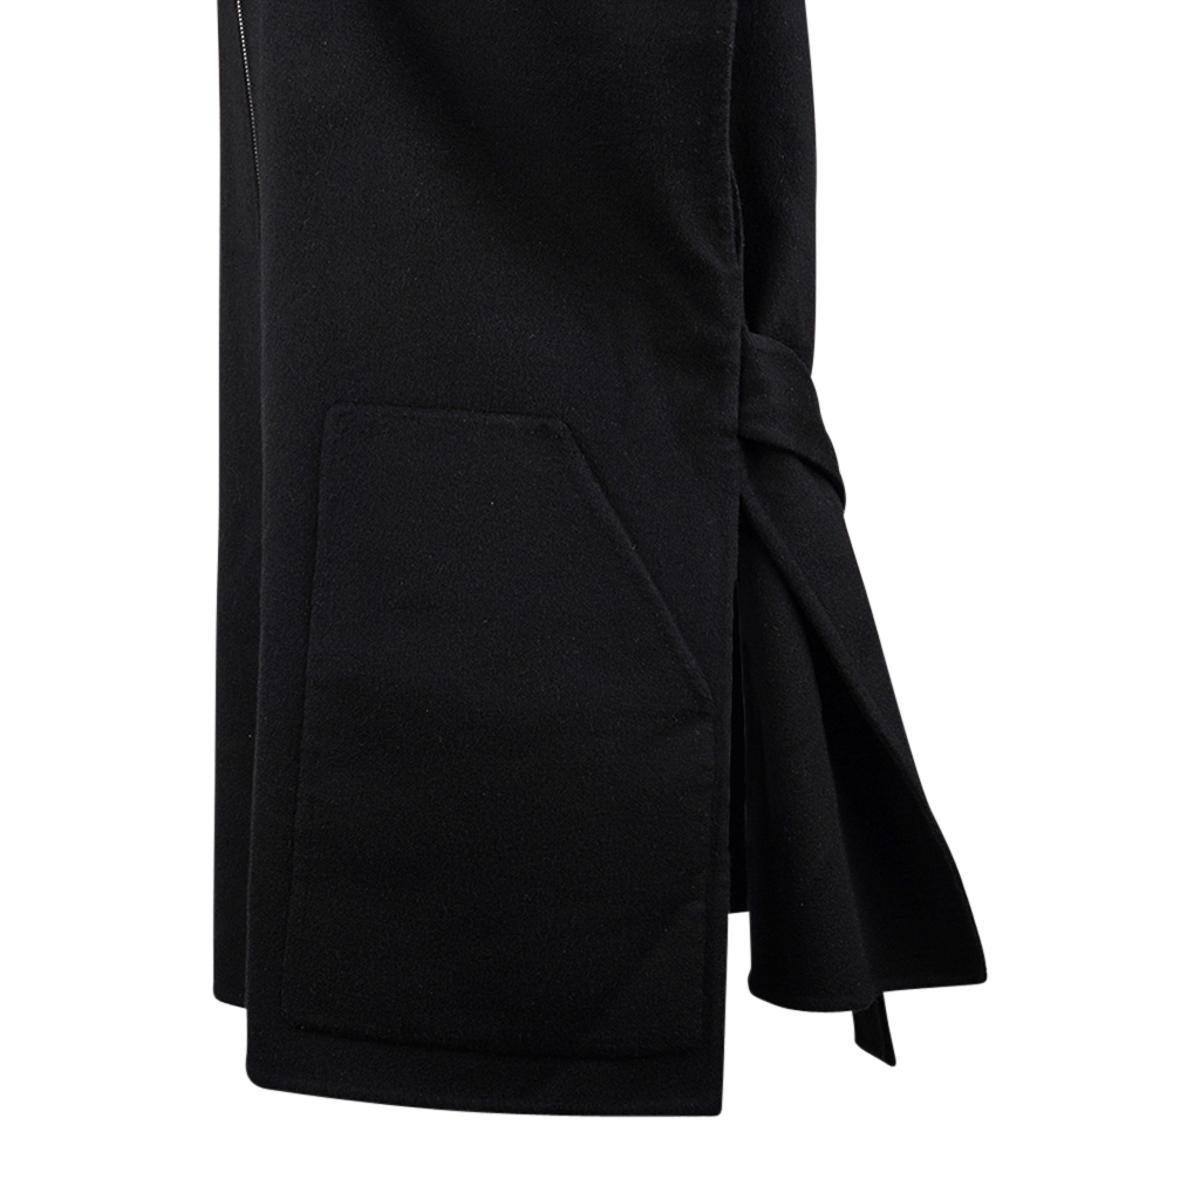 Hermes Short Vest Black Zip Double Face Cashmere 38 / 6 For Sale 7